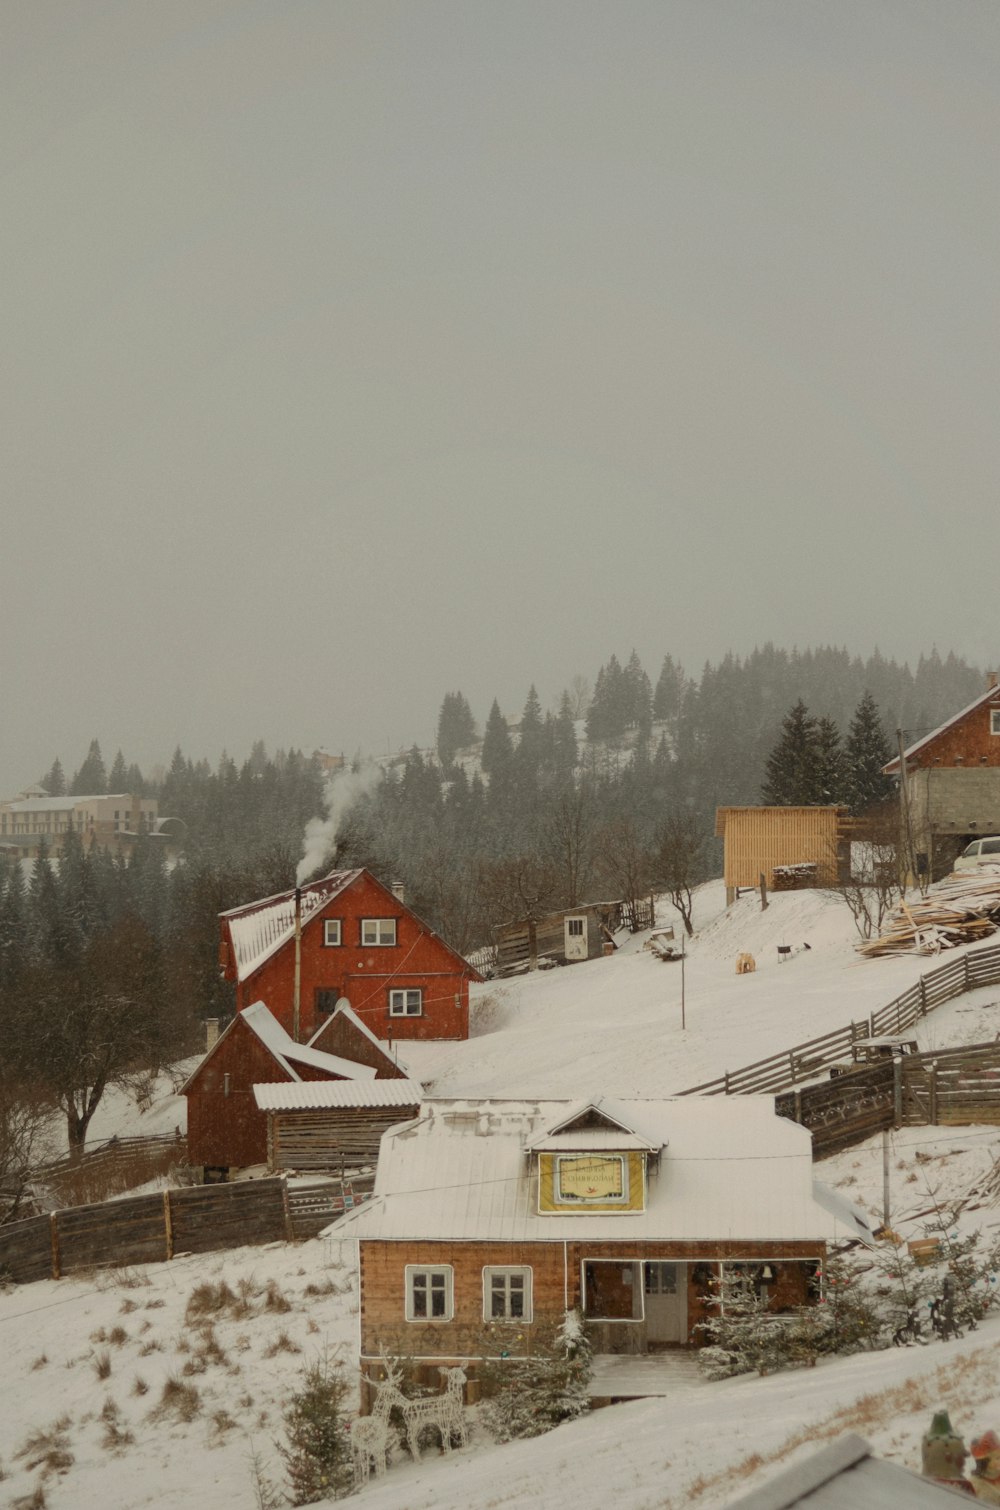 una ladera cubierta de nieve con casas y árboles